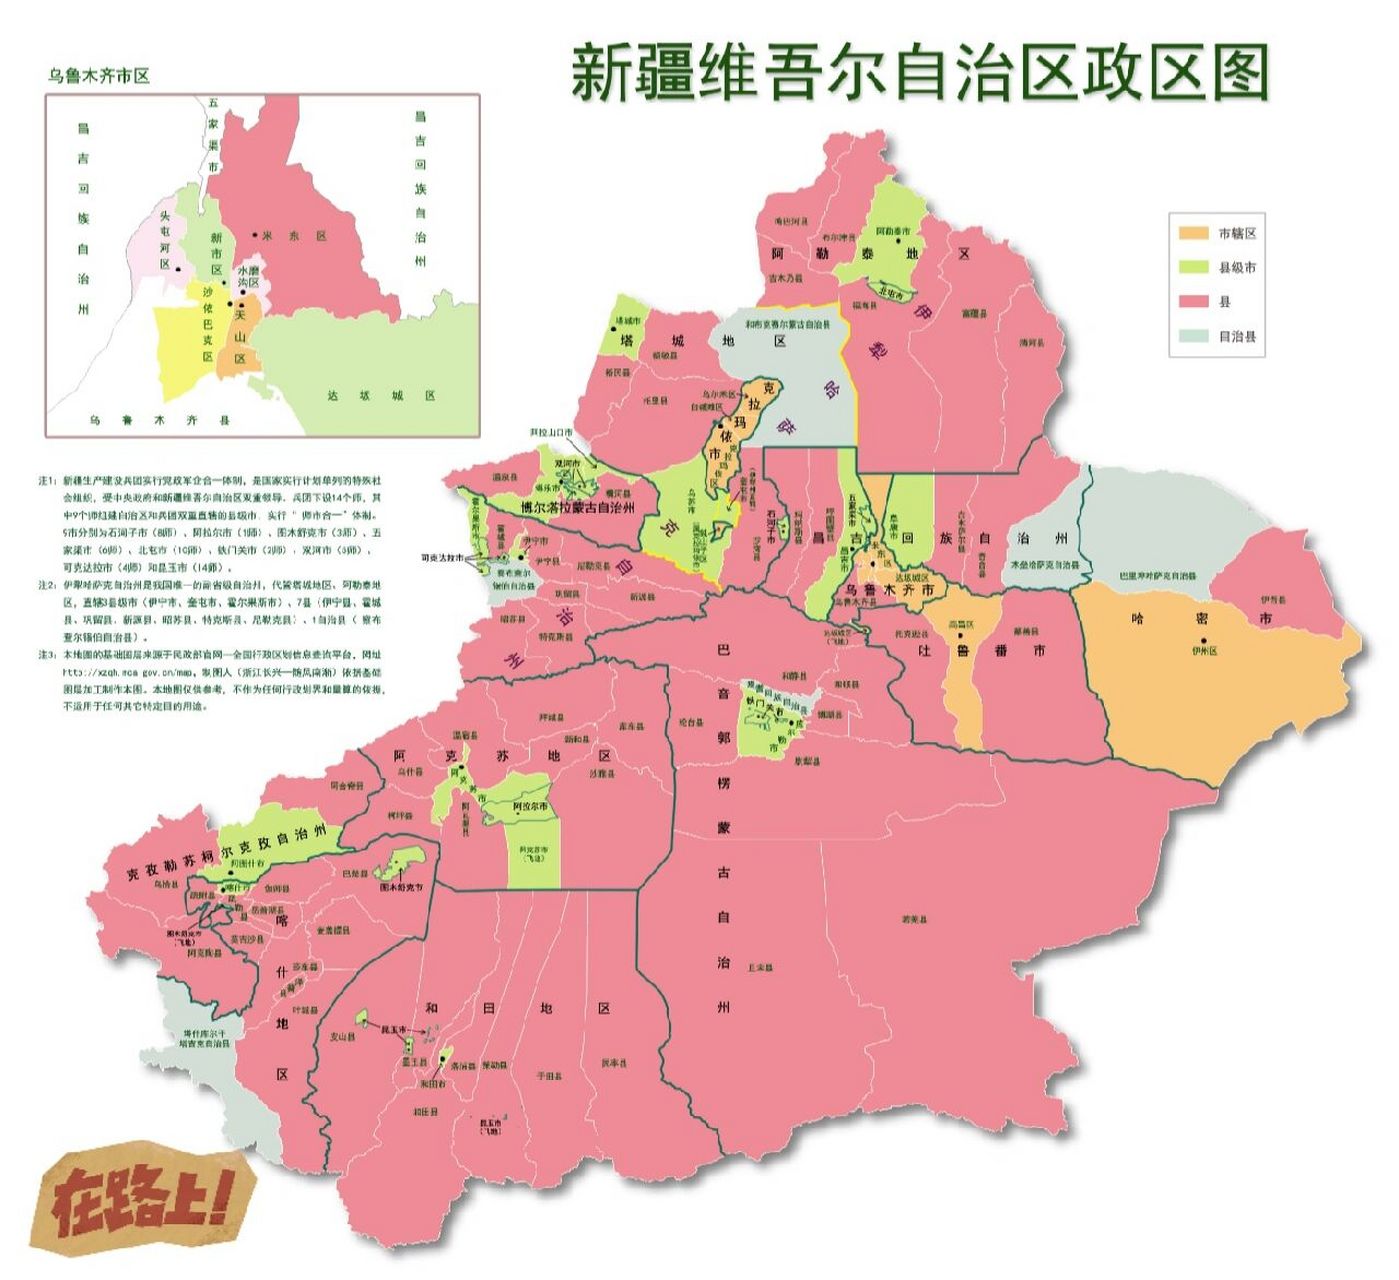 49万平方公里,是中国陆地面积最大的省级行政区,约占中国国土总面积的